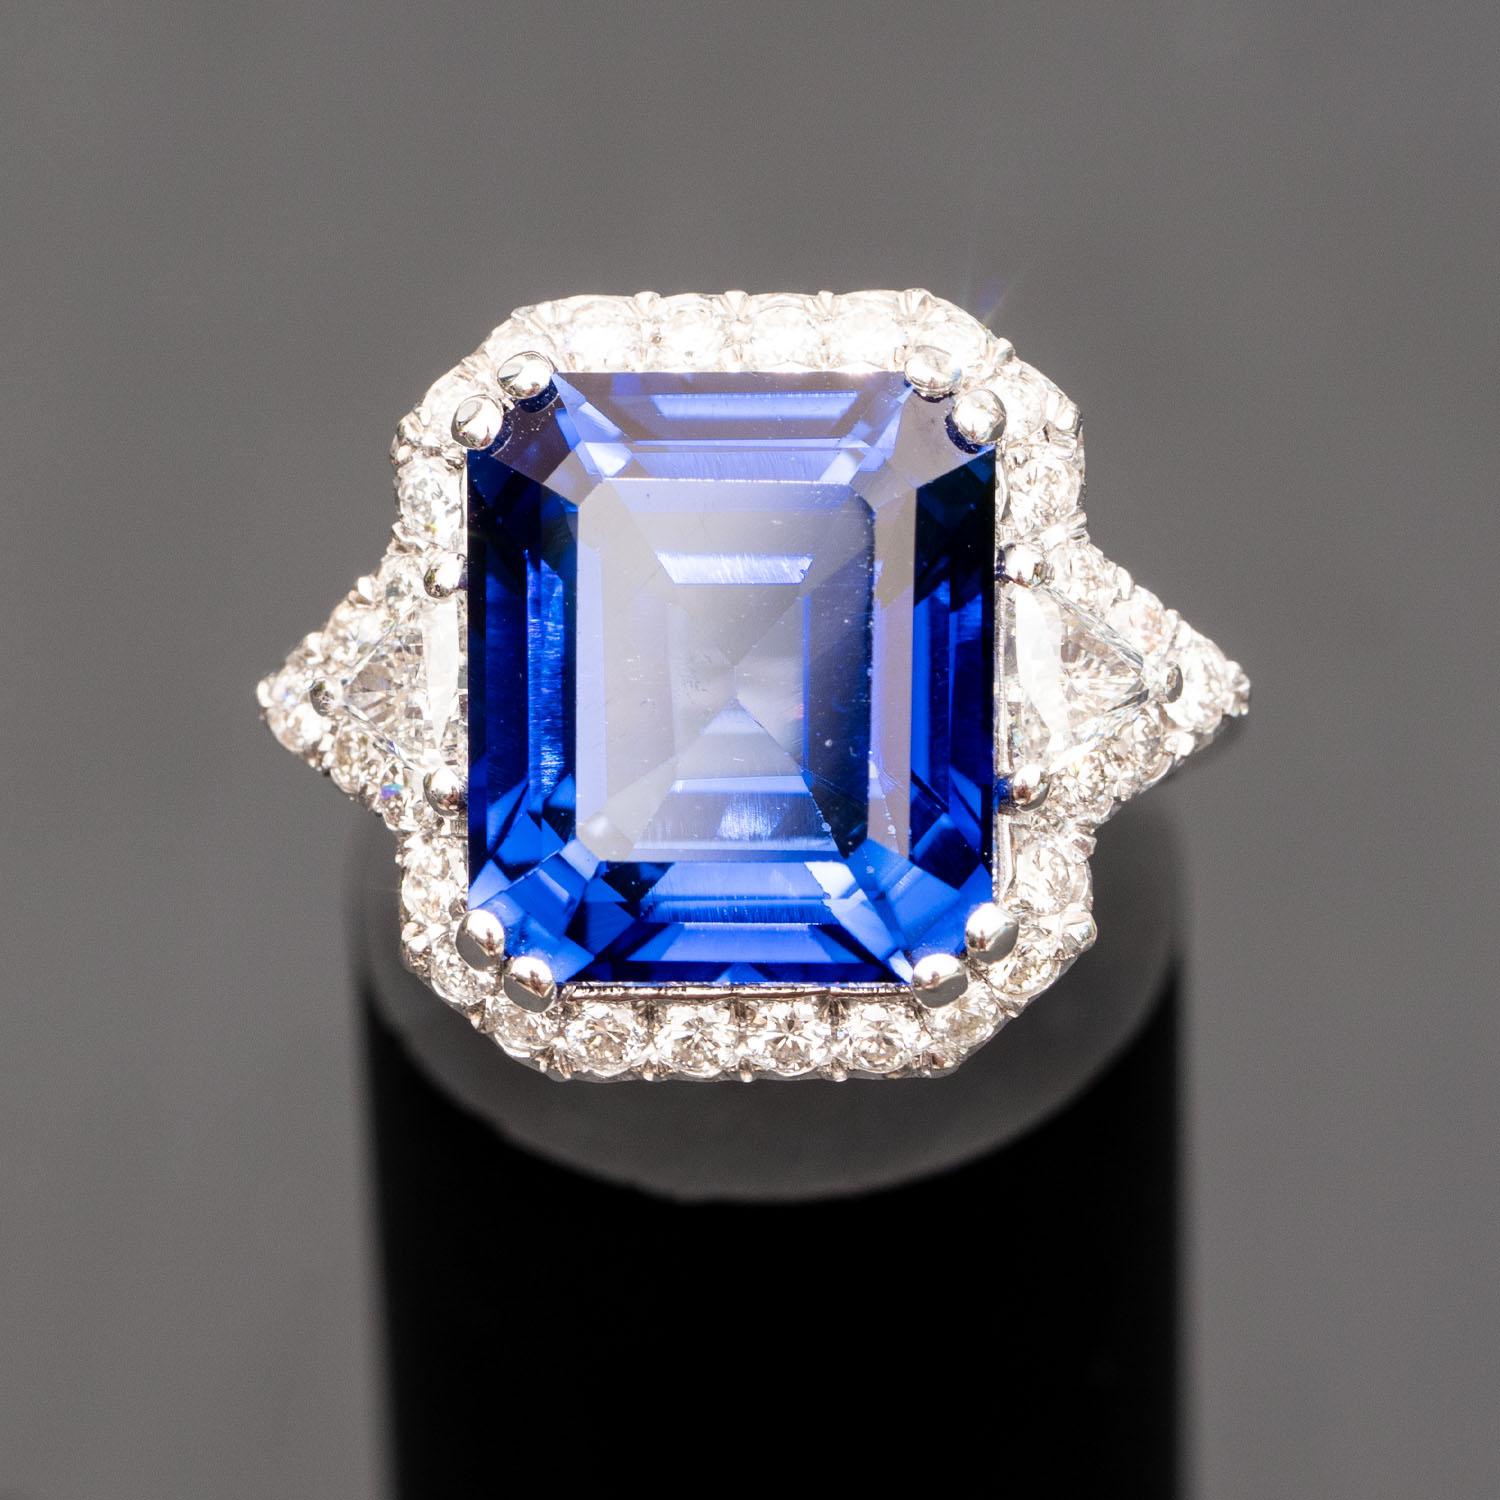 Cette magnifique bague en saphir bleu impressionnera tous ceux qui vous entourent. Il présente une grande pierre précieuse émeraude de 13,70 carats, ornée de diamants naturels de 1,20 carat.

Saphir Diffus
Minéral : Corindon
Dureté : 9 sur l'échelle